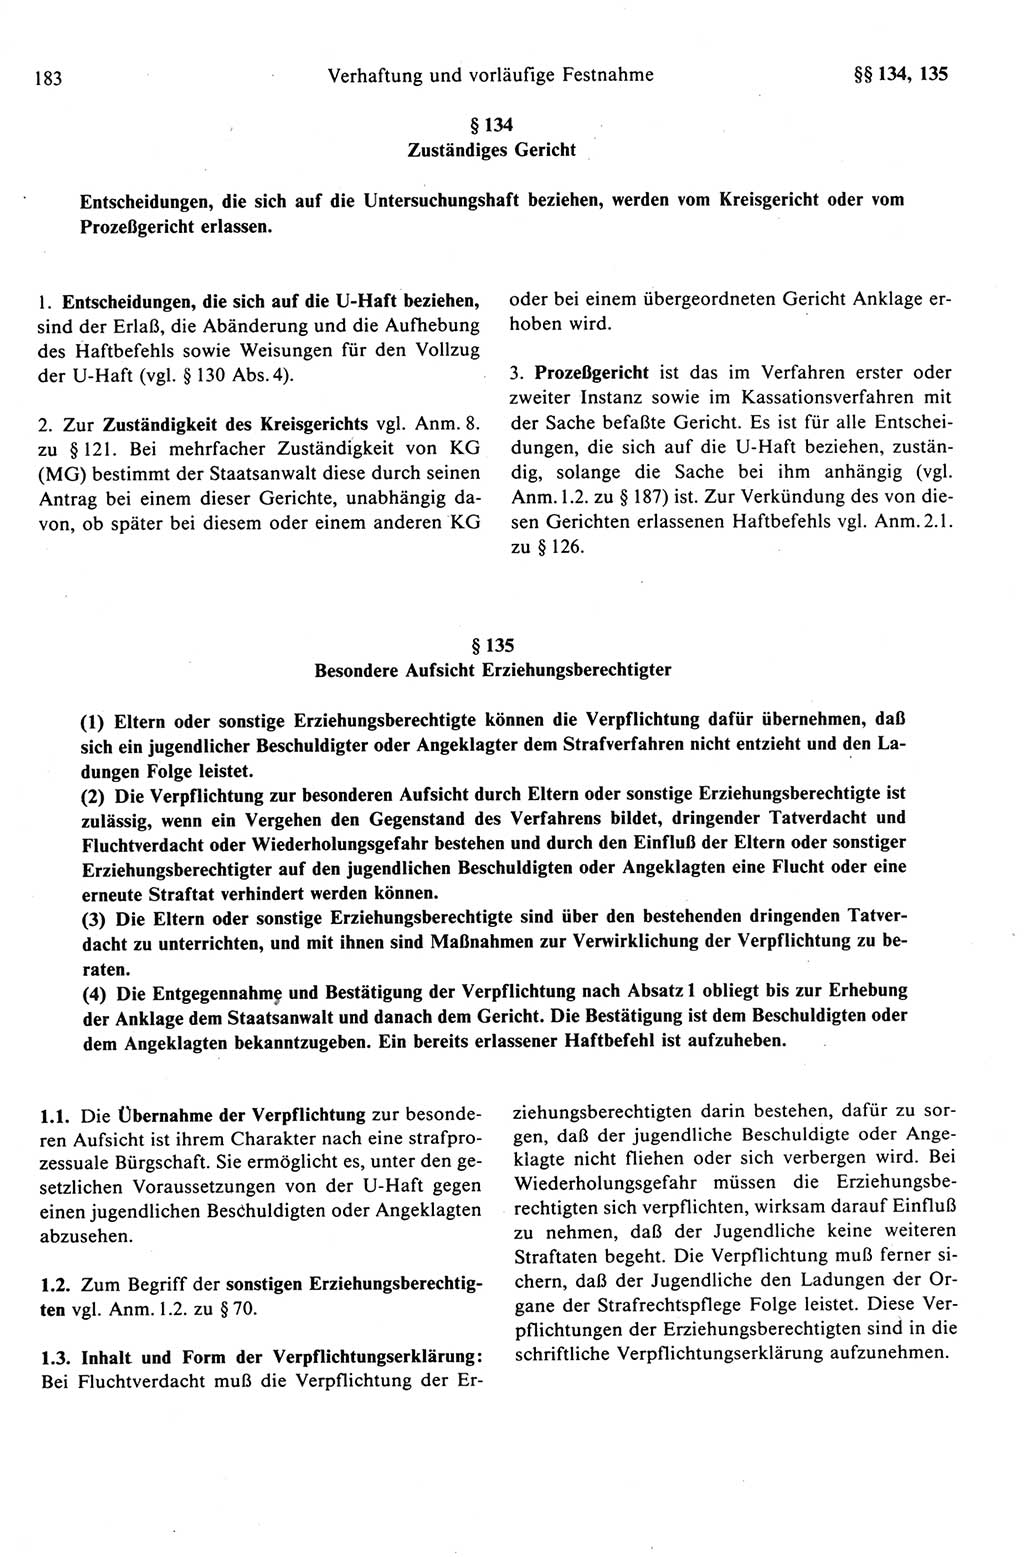 Strafprozeßrecht der DDR (Deutsche Demokratische Republik), Kommentar zur Strafprozeßordnung (StPO) 1989, Seite 183 (Strafprozeßr. DDR Komm. StPO 1989, S. 183)